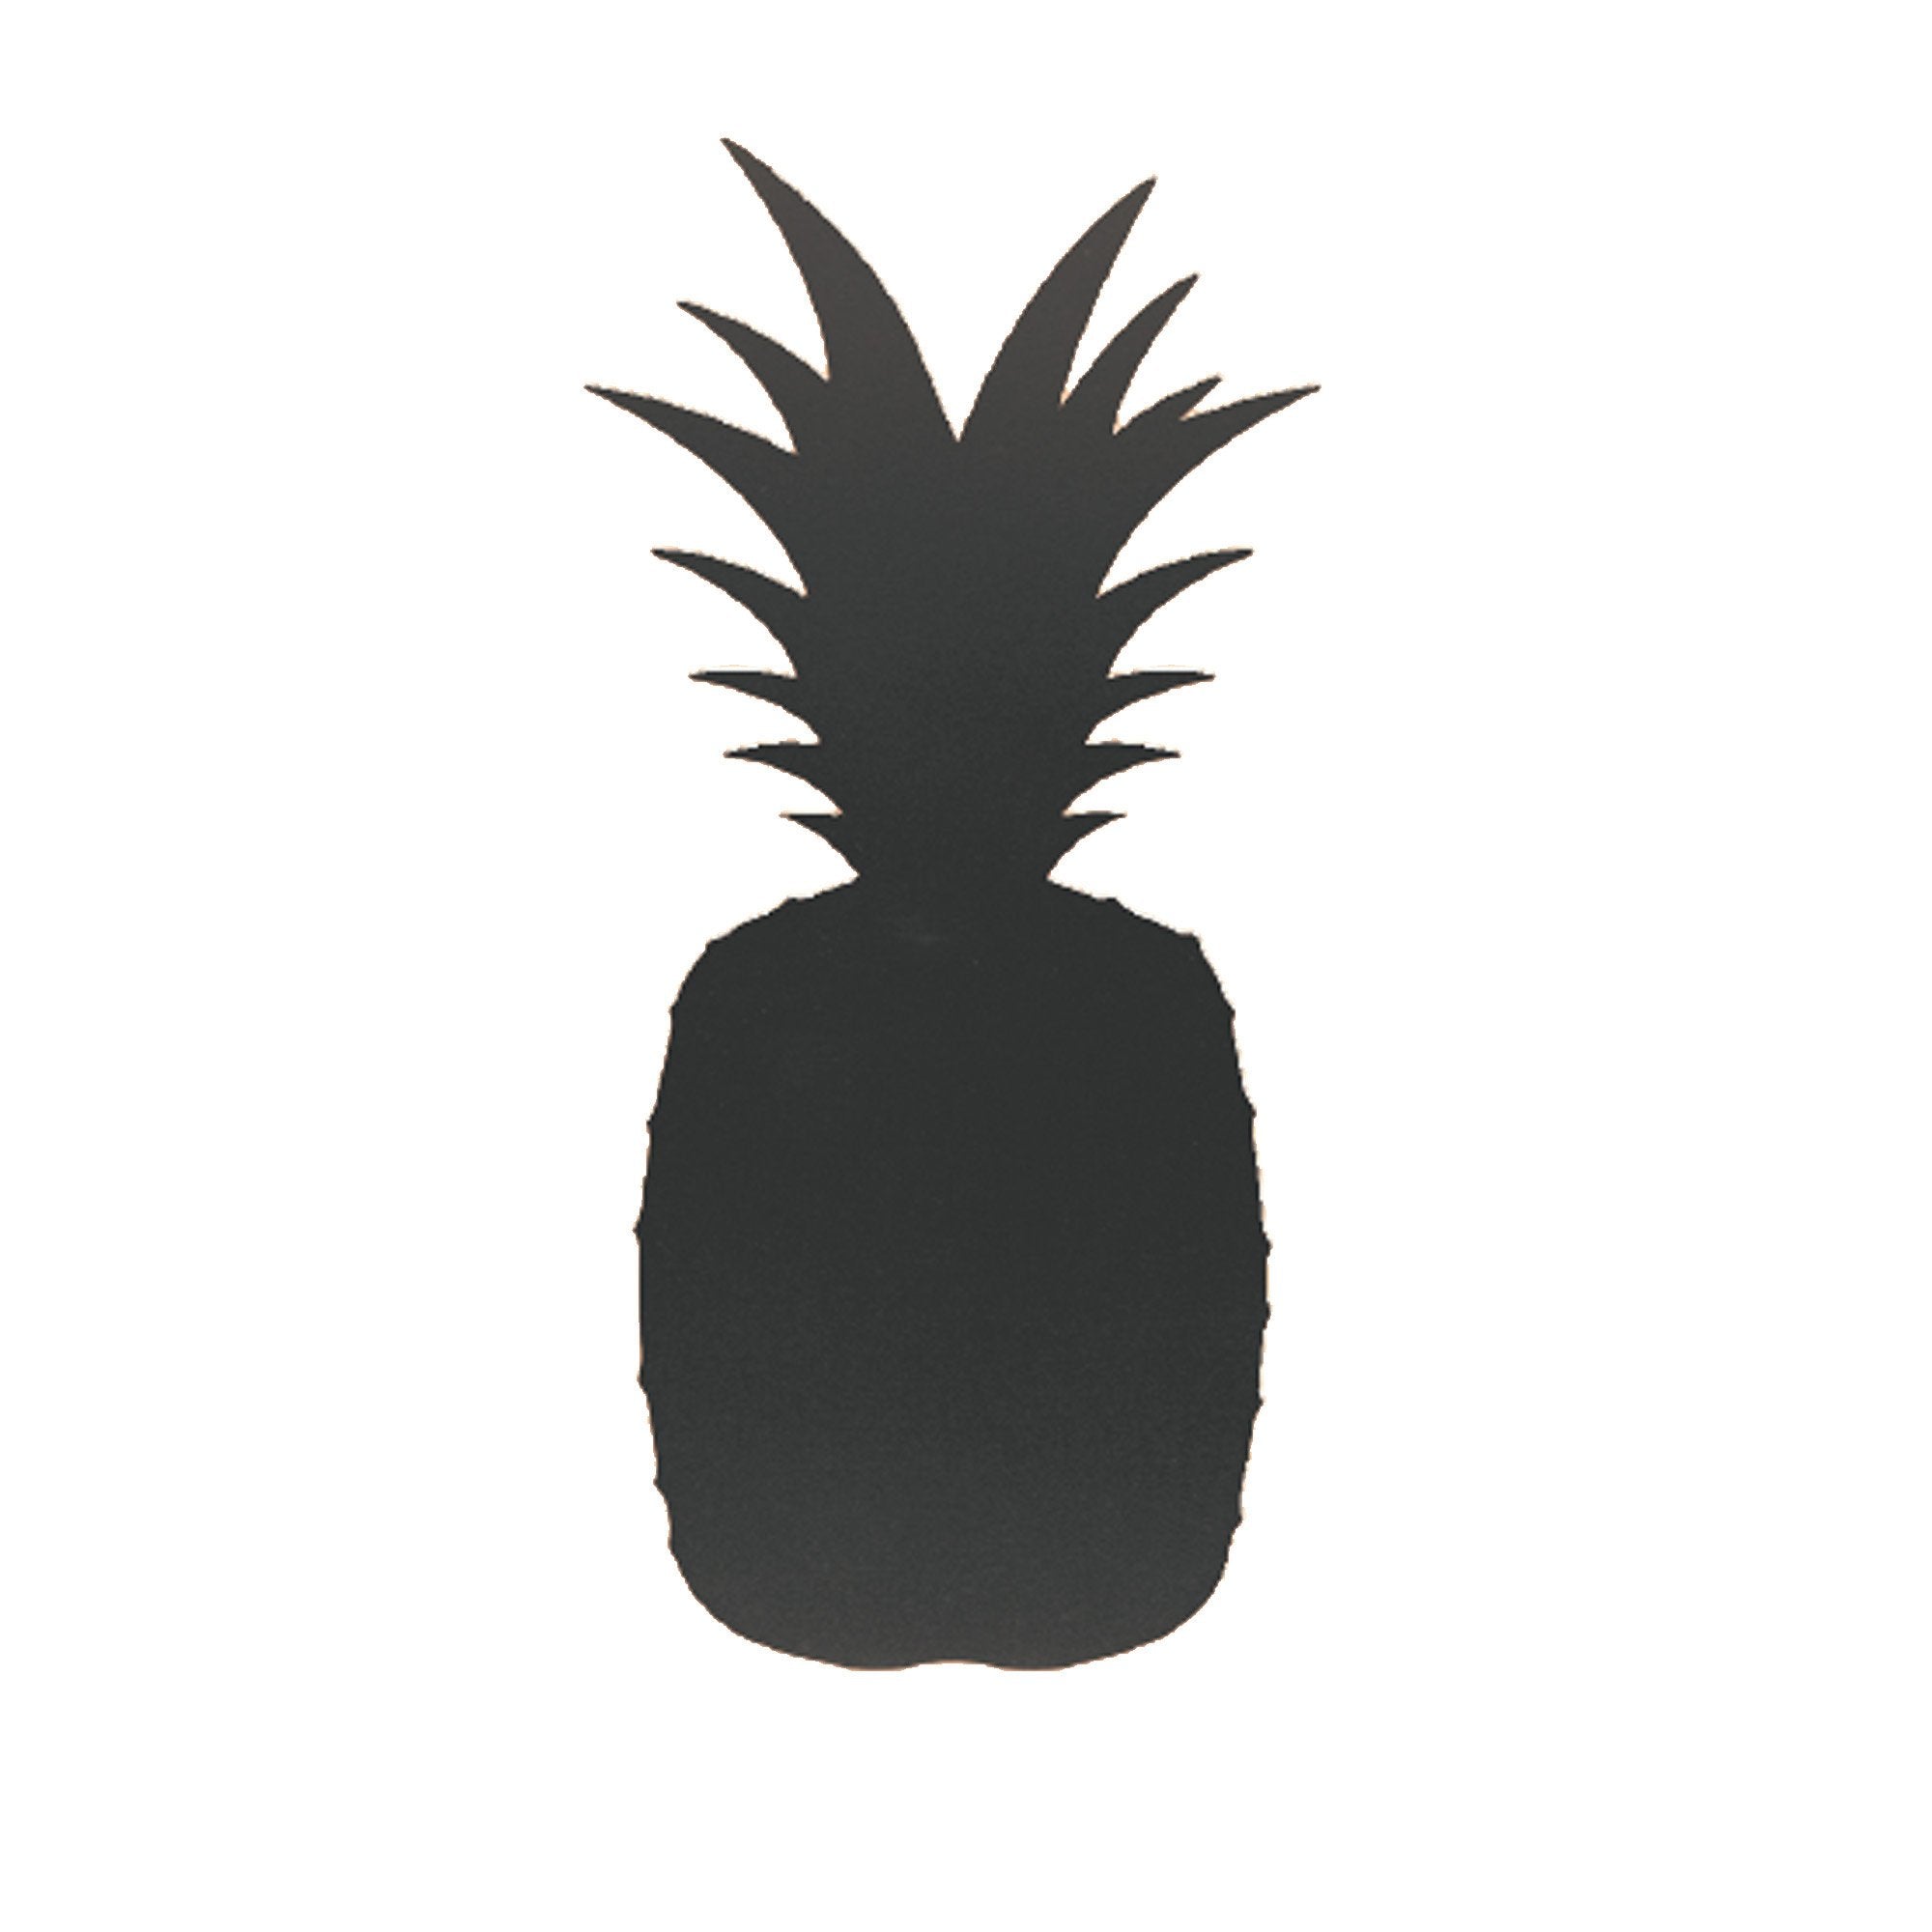 securit-lavagna-parete-ananas-silhouette